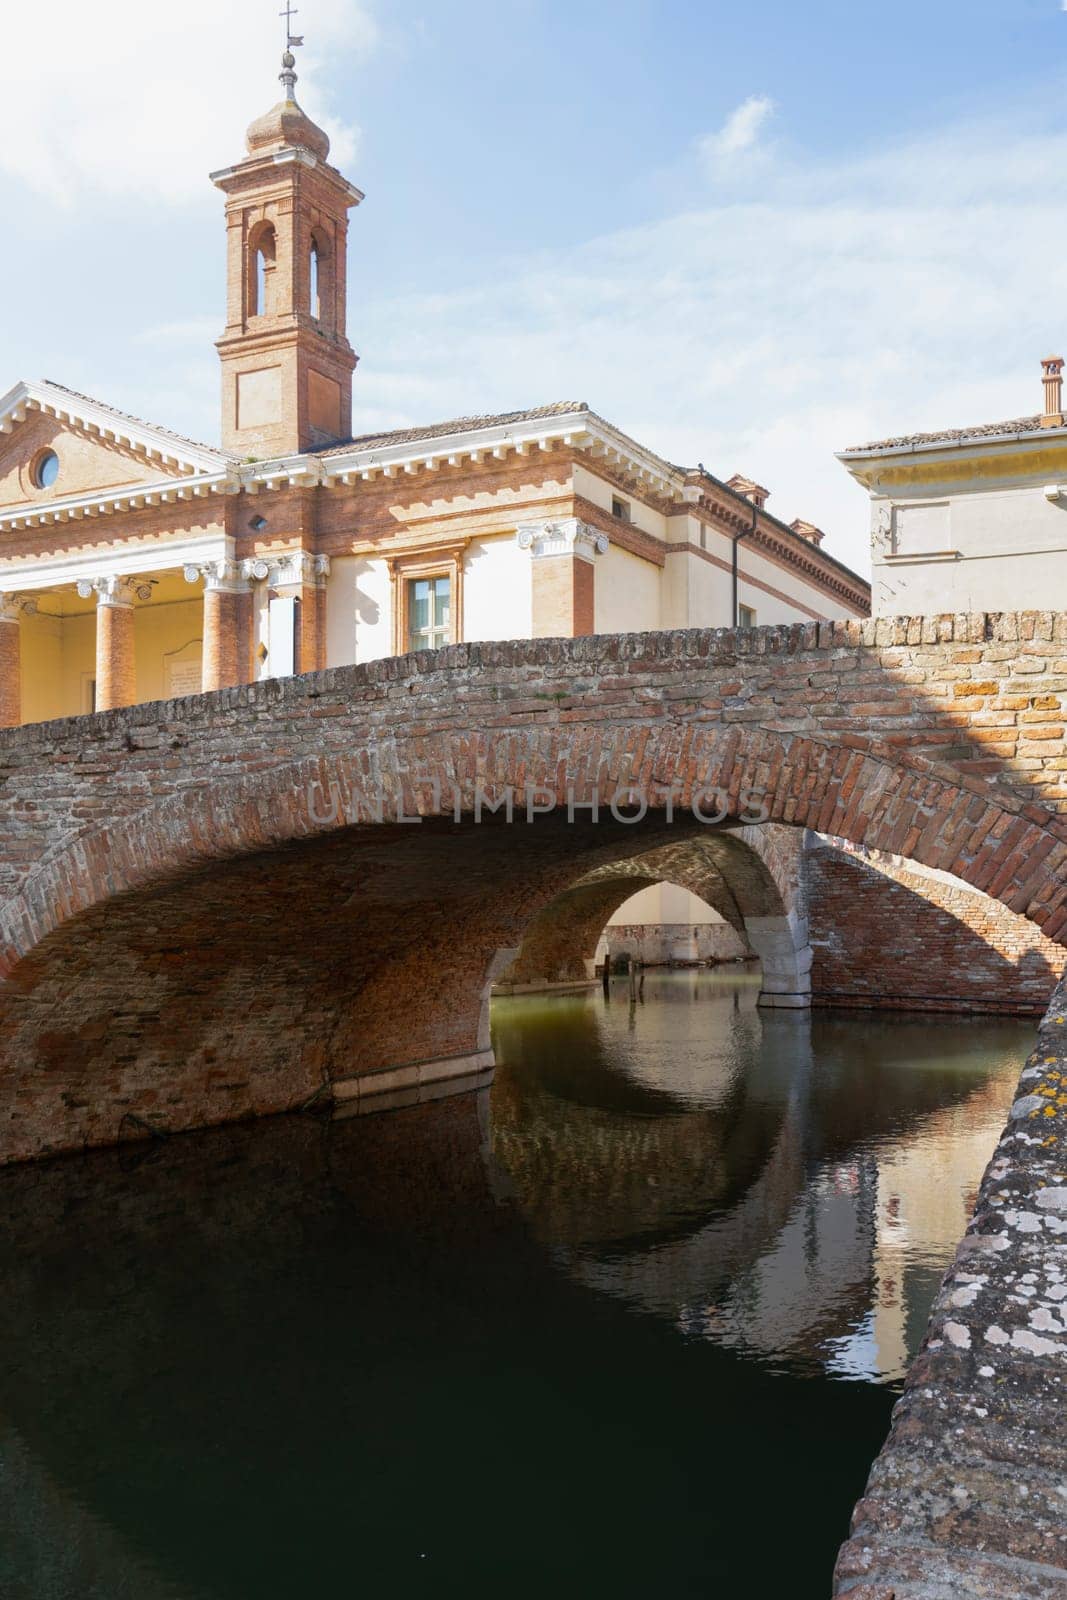 Bridge of Sbirri in Comacchio, Italy by sergiodv